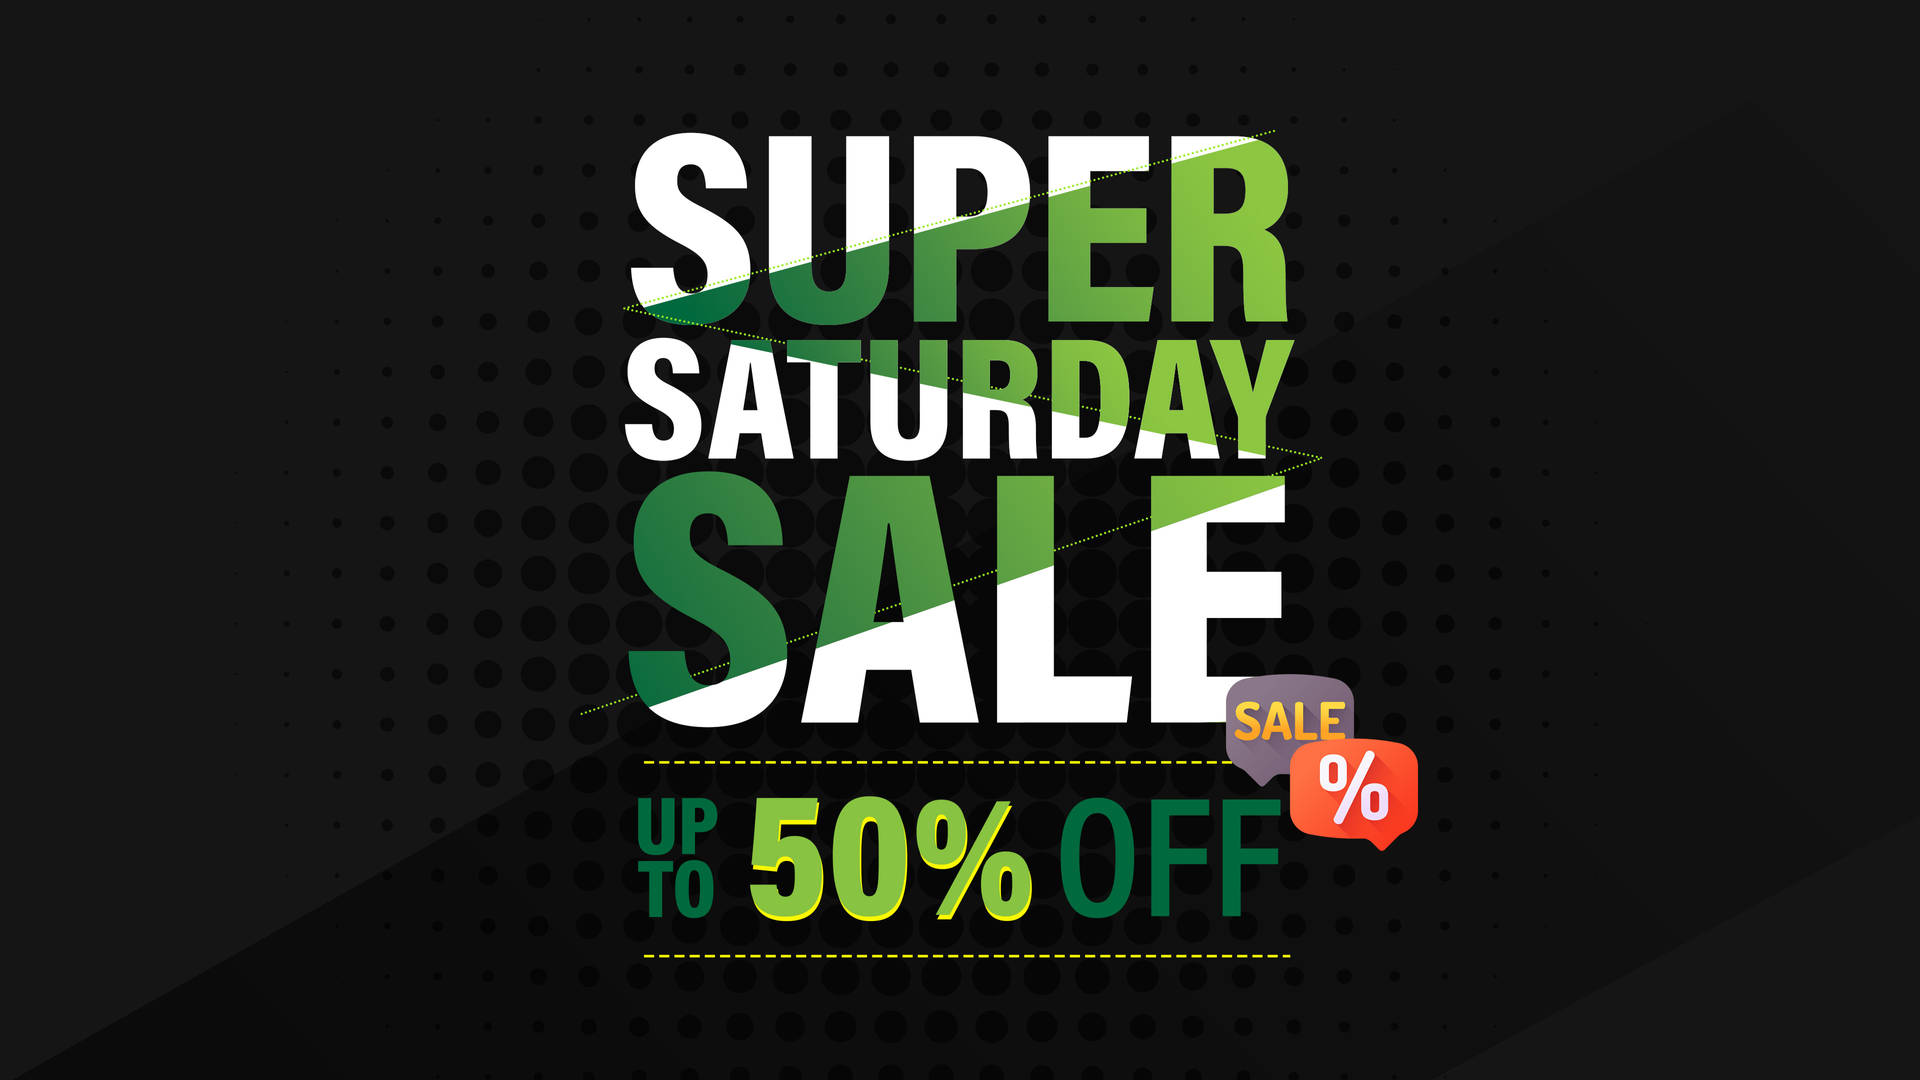 Green And White Super Saturday Sale Wallpaper